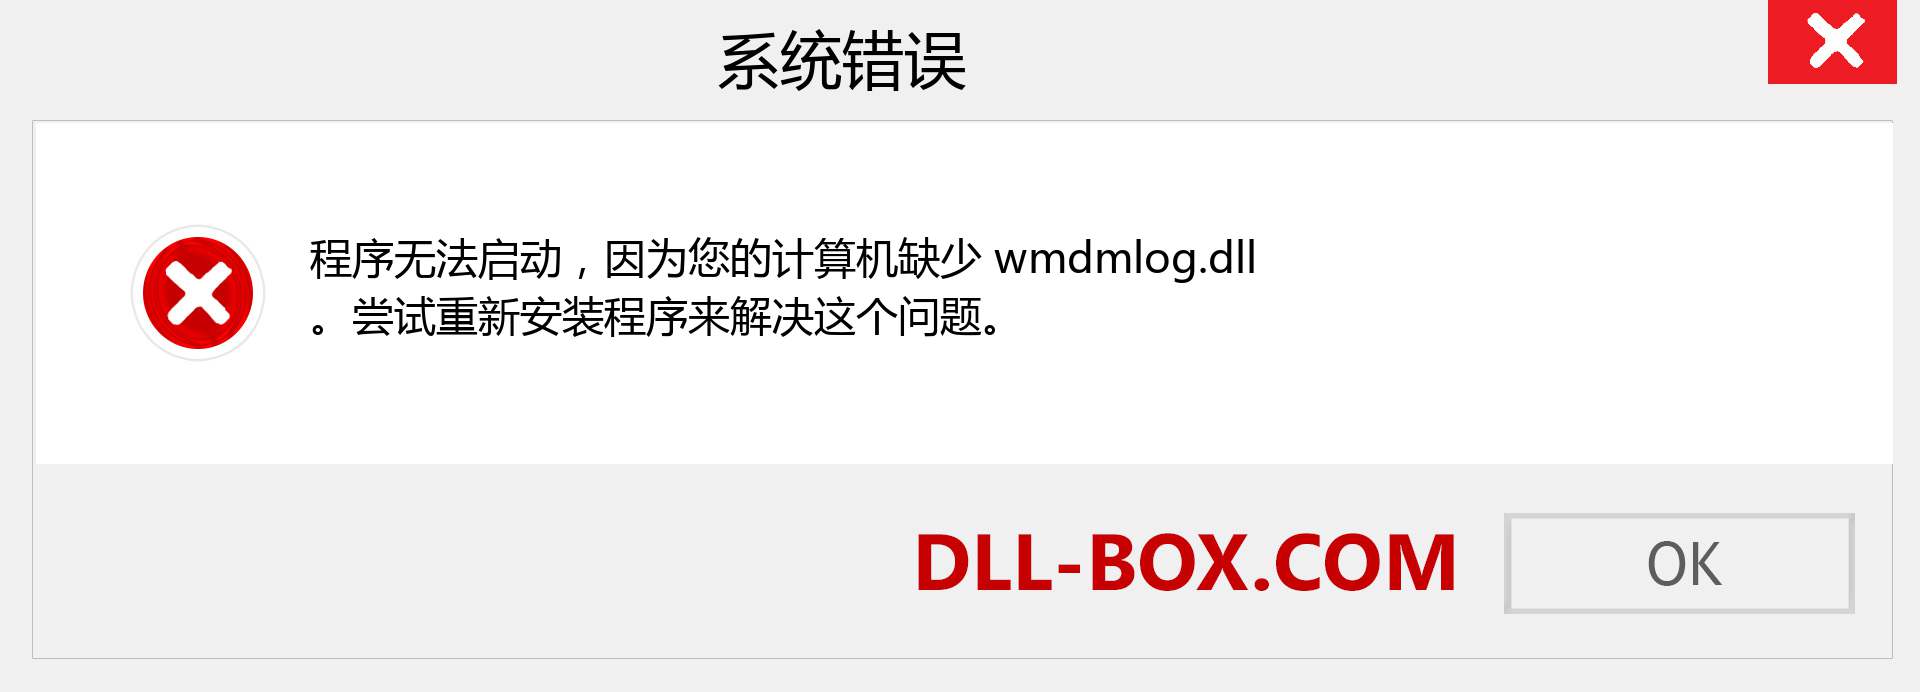 wmdmlog.dll 文件丢失？。 适用于 Windows 7、8、10 的下载 - 修复 Windows、照片、图像上的 wmdmlog dll 丢失错误